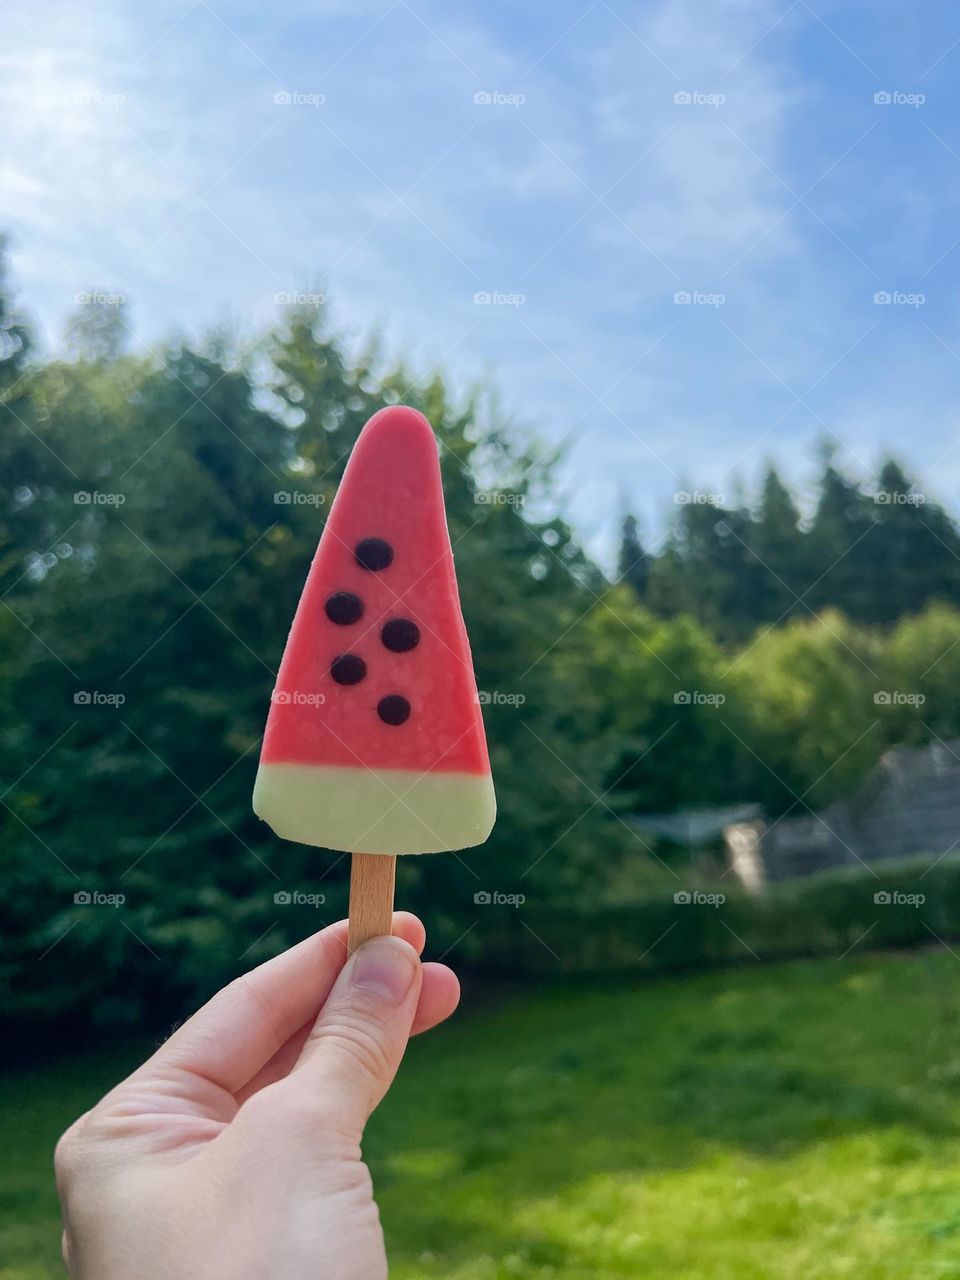 A watermelon ice cream 